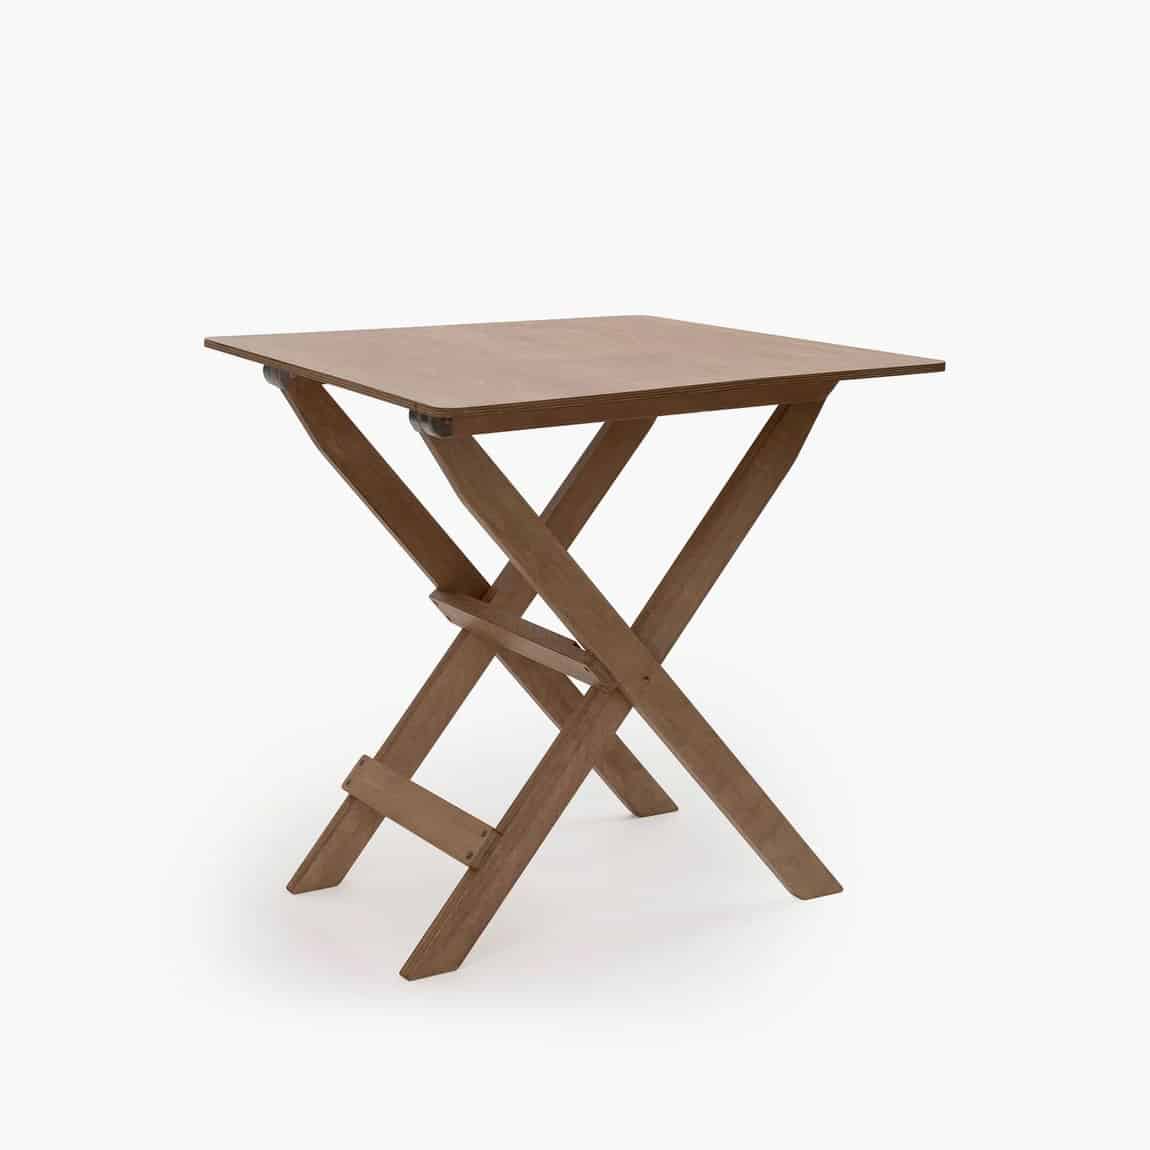 <p class="whitespace-pre-wrap">stilfullt campingbord som kan klappes sammen. Inspirert av et antikt kortbord. Dette sammenleggbare sidebordet er den perfekte størrelsen for pikniklunsj eller for å holde drinkene dine på campingturen. Laget i hardwood bjørk, rustfritt stål og kobber - som skaper en stilig og naturlig estetikk som passer inn ute. Dette bordet er robust og bygget for å vare, og kan enkelt oppbevares når det ikke er i bruk eller pakkes i bobilen for camping. Bordet er beiset med en nydelig, naturlig honningfarge og avsluttet med en værbestandig sateng-klarlakk. Et unikt kvalitetsbord som kan brukes der du måtte trenge det. Inne, ute på terrassen eller på tur. Passer perfekt sammen med stolene i samme stil. </p> størrelse: 55 x 55 x 58 cm, vekt: 5kg